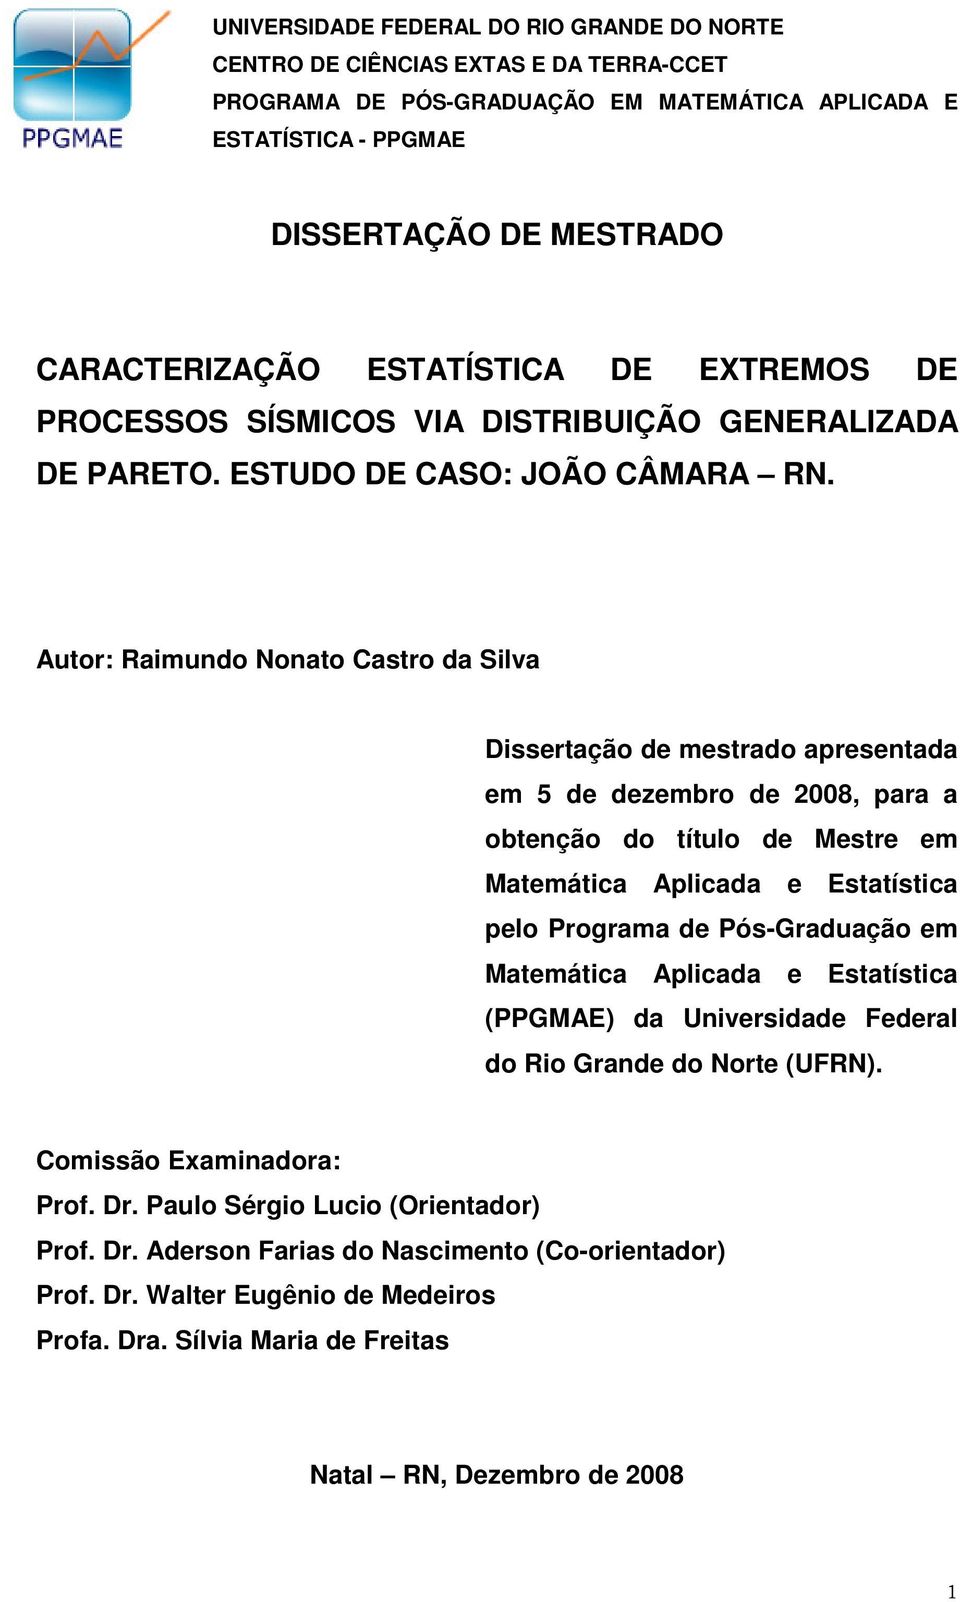 Autor: Ramudo Noato Castro da Sva Dssertação de mestrado apresetada em 5 de dezembro de 8, para a obteção do títuo de Mestre em Matemátca Apcada e Estatístca peo Programa de Pós-Graduação em